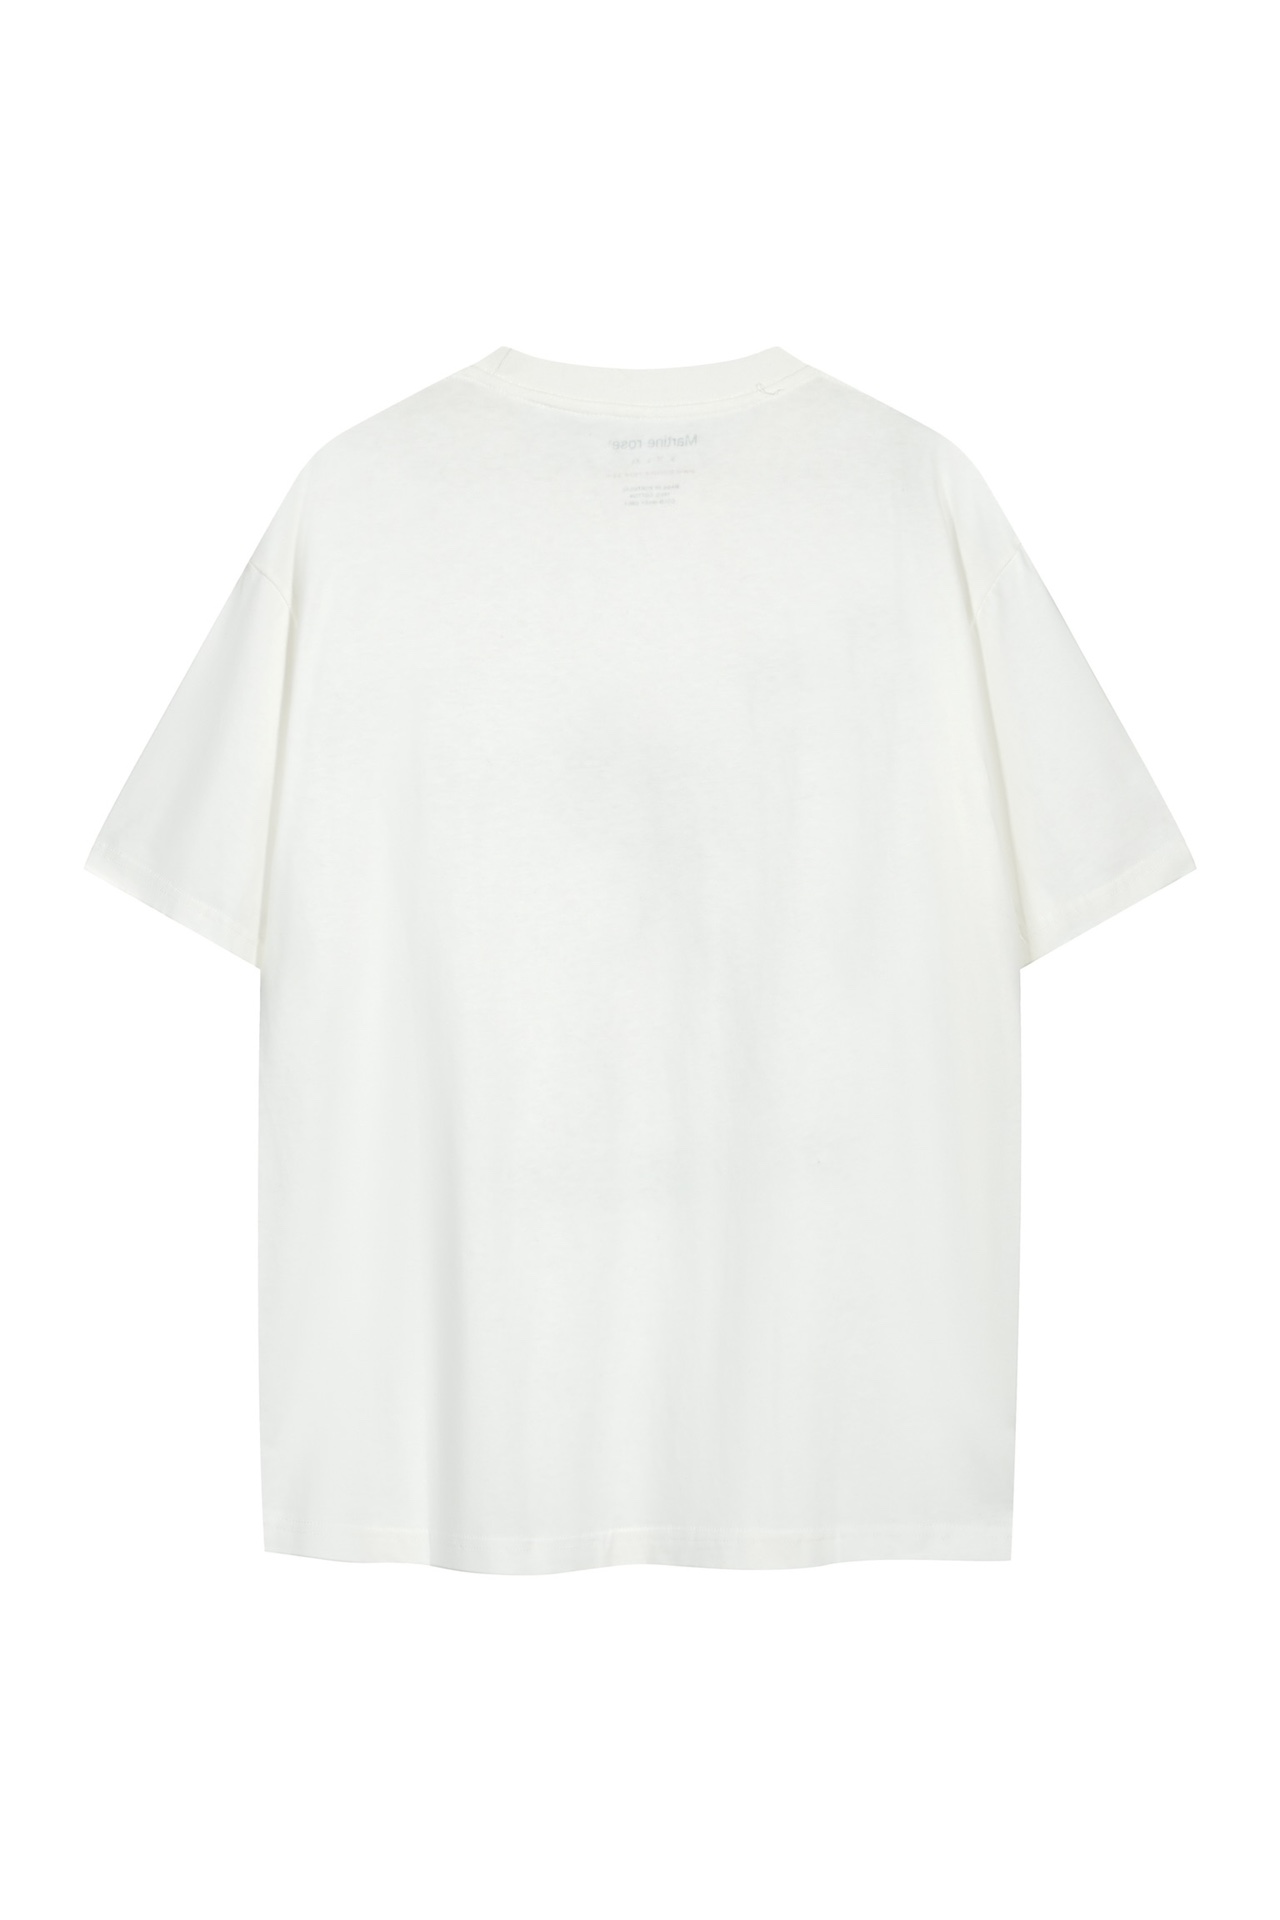 新商品! マーティンローズ 公式スーパーコピー 純綿 トップス 半袖 tシャツ 柔らかい 写真プリントシンプル ホワイト_2